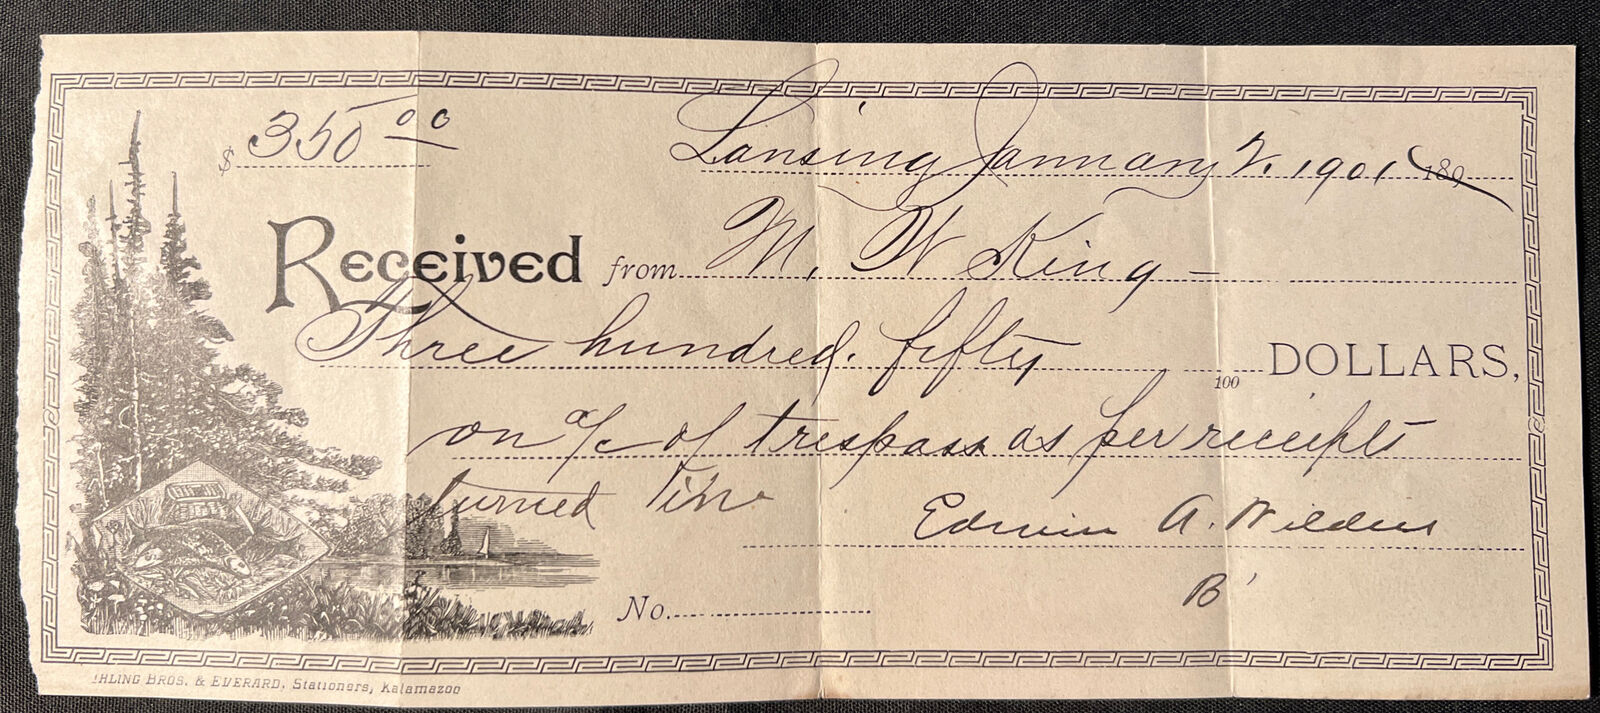 Vtg 1901 Bank Check FISHING Vignette Lansing Michigan $350 for Trespassing